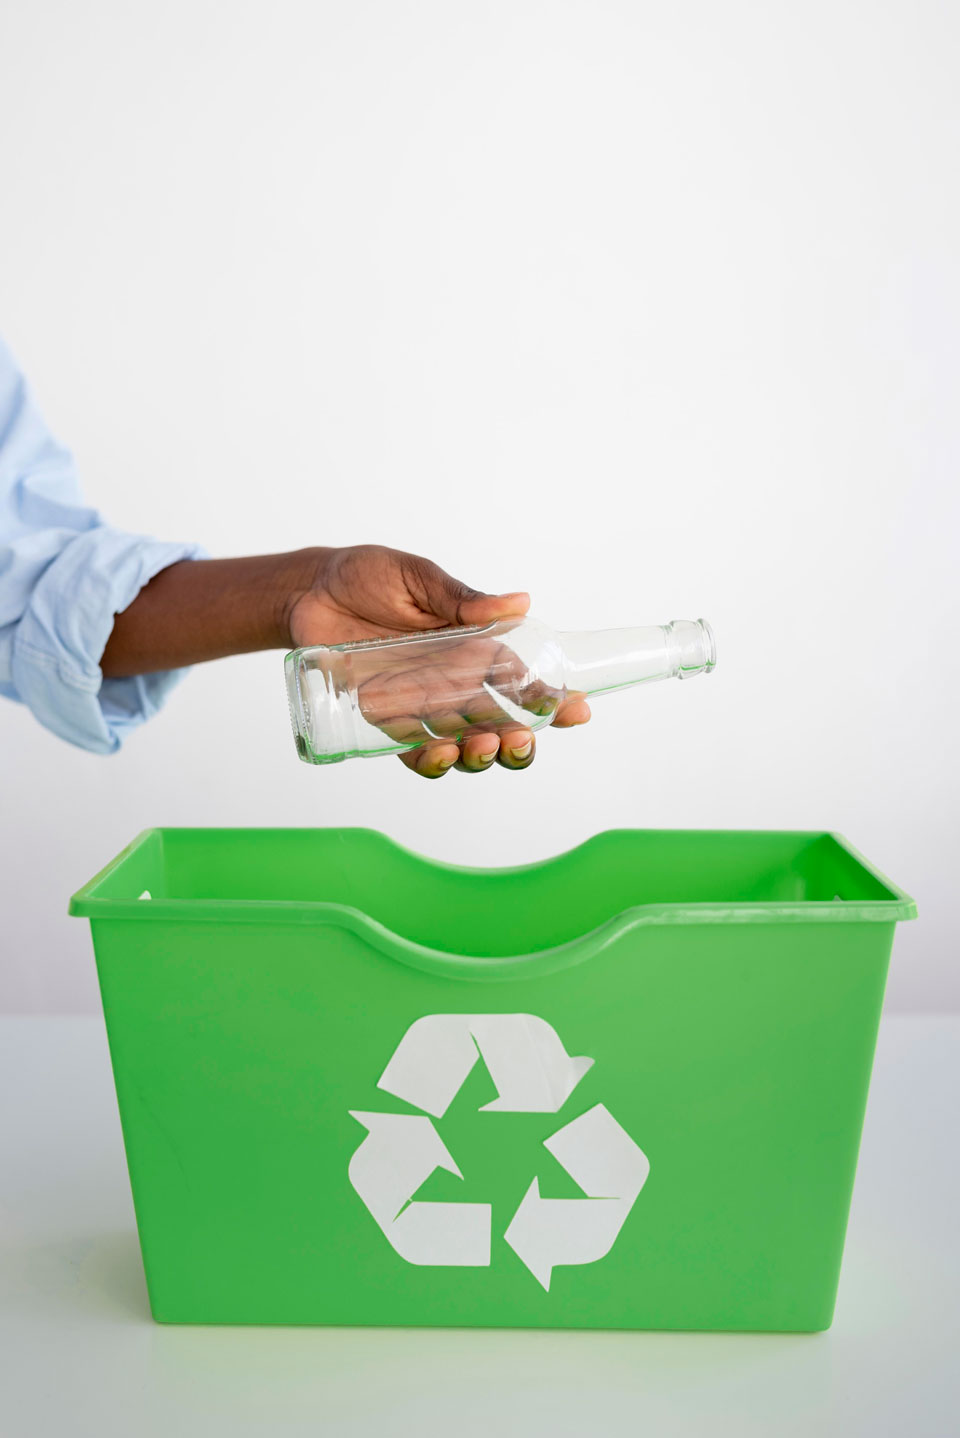 اعادة تدوير الزجاج| الخطوة نحو الاستدامة والحفاظ على البيئة